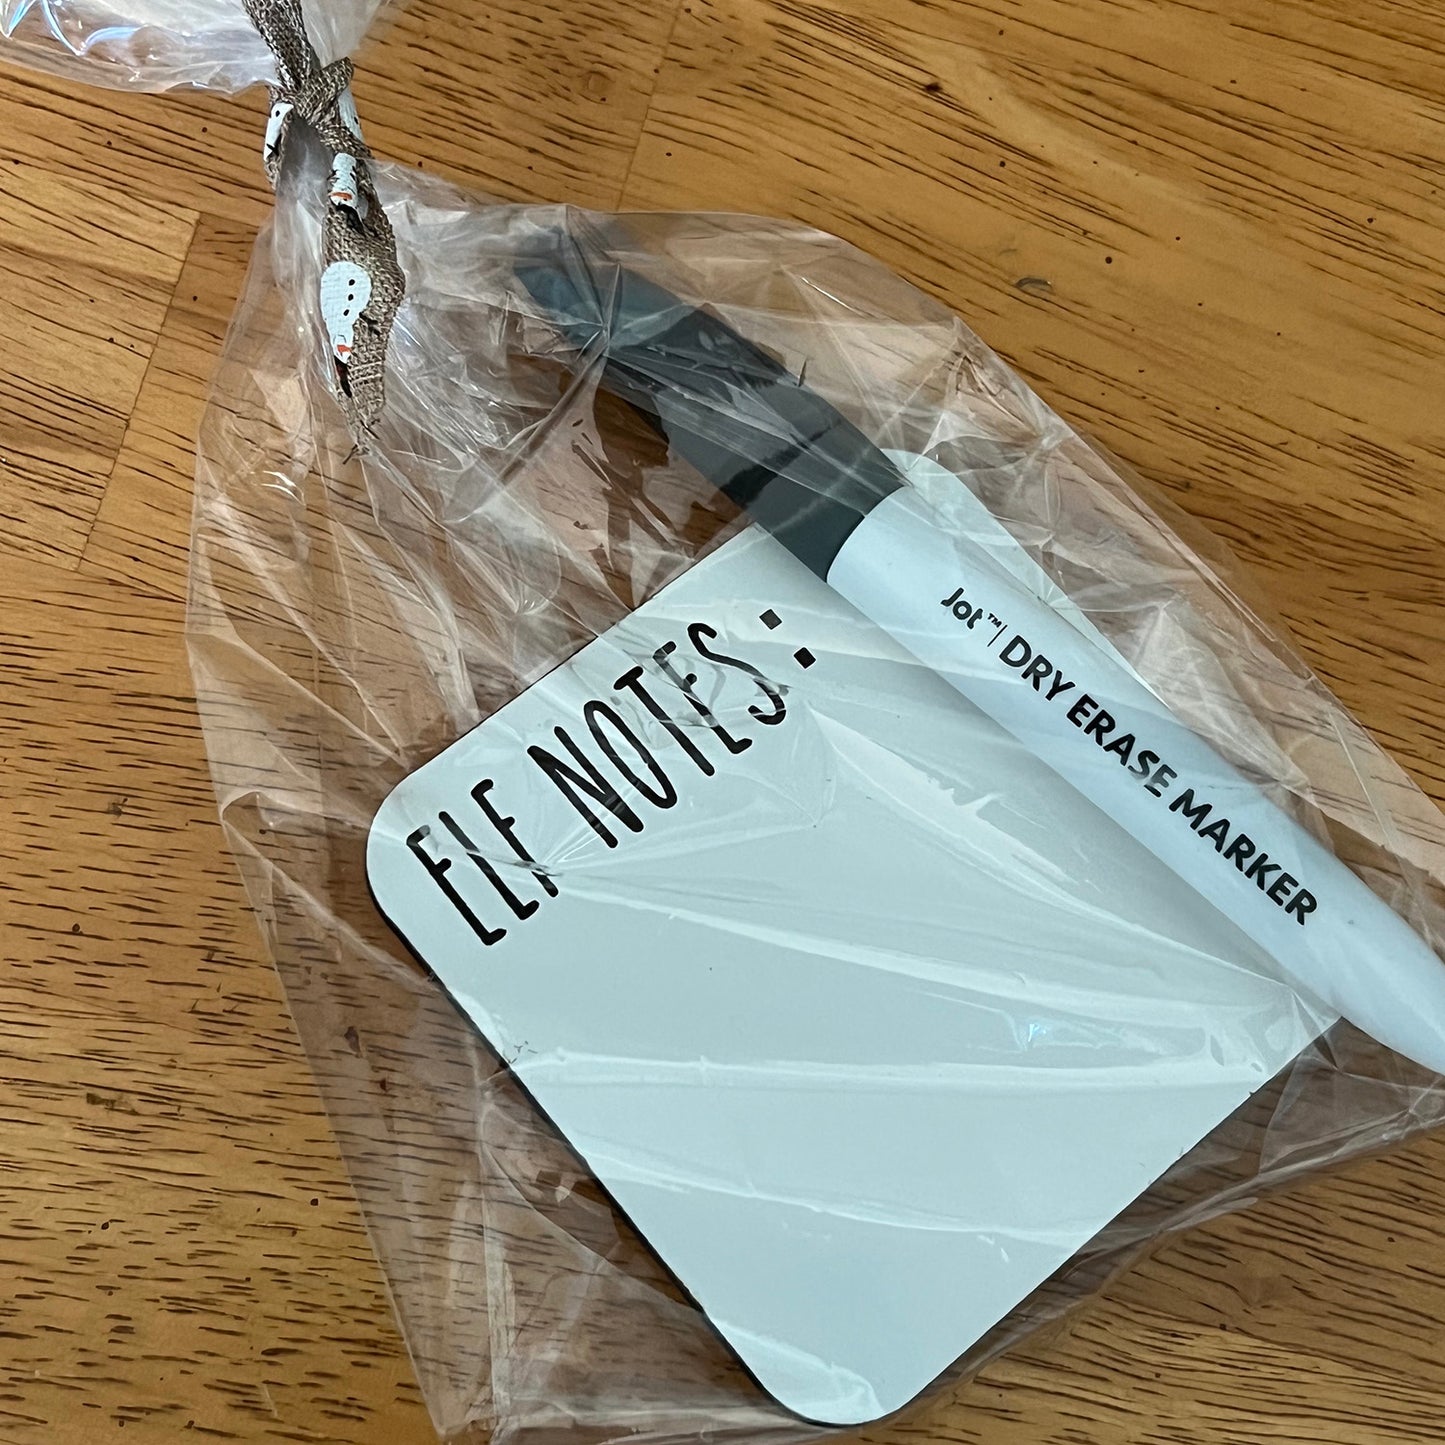 Elf Notes Dry Erase Board – Glowforge Shop